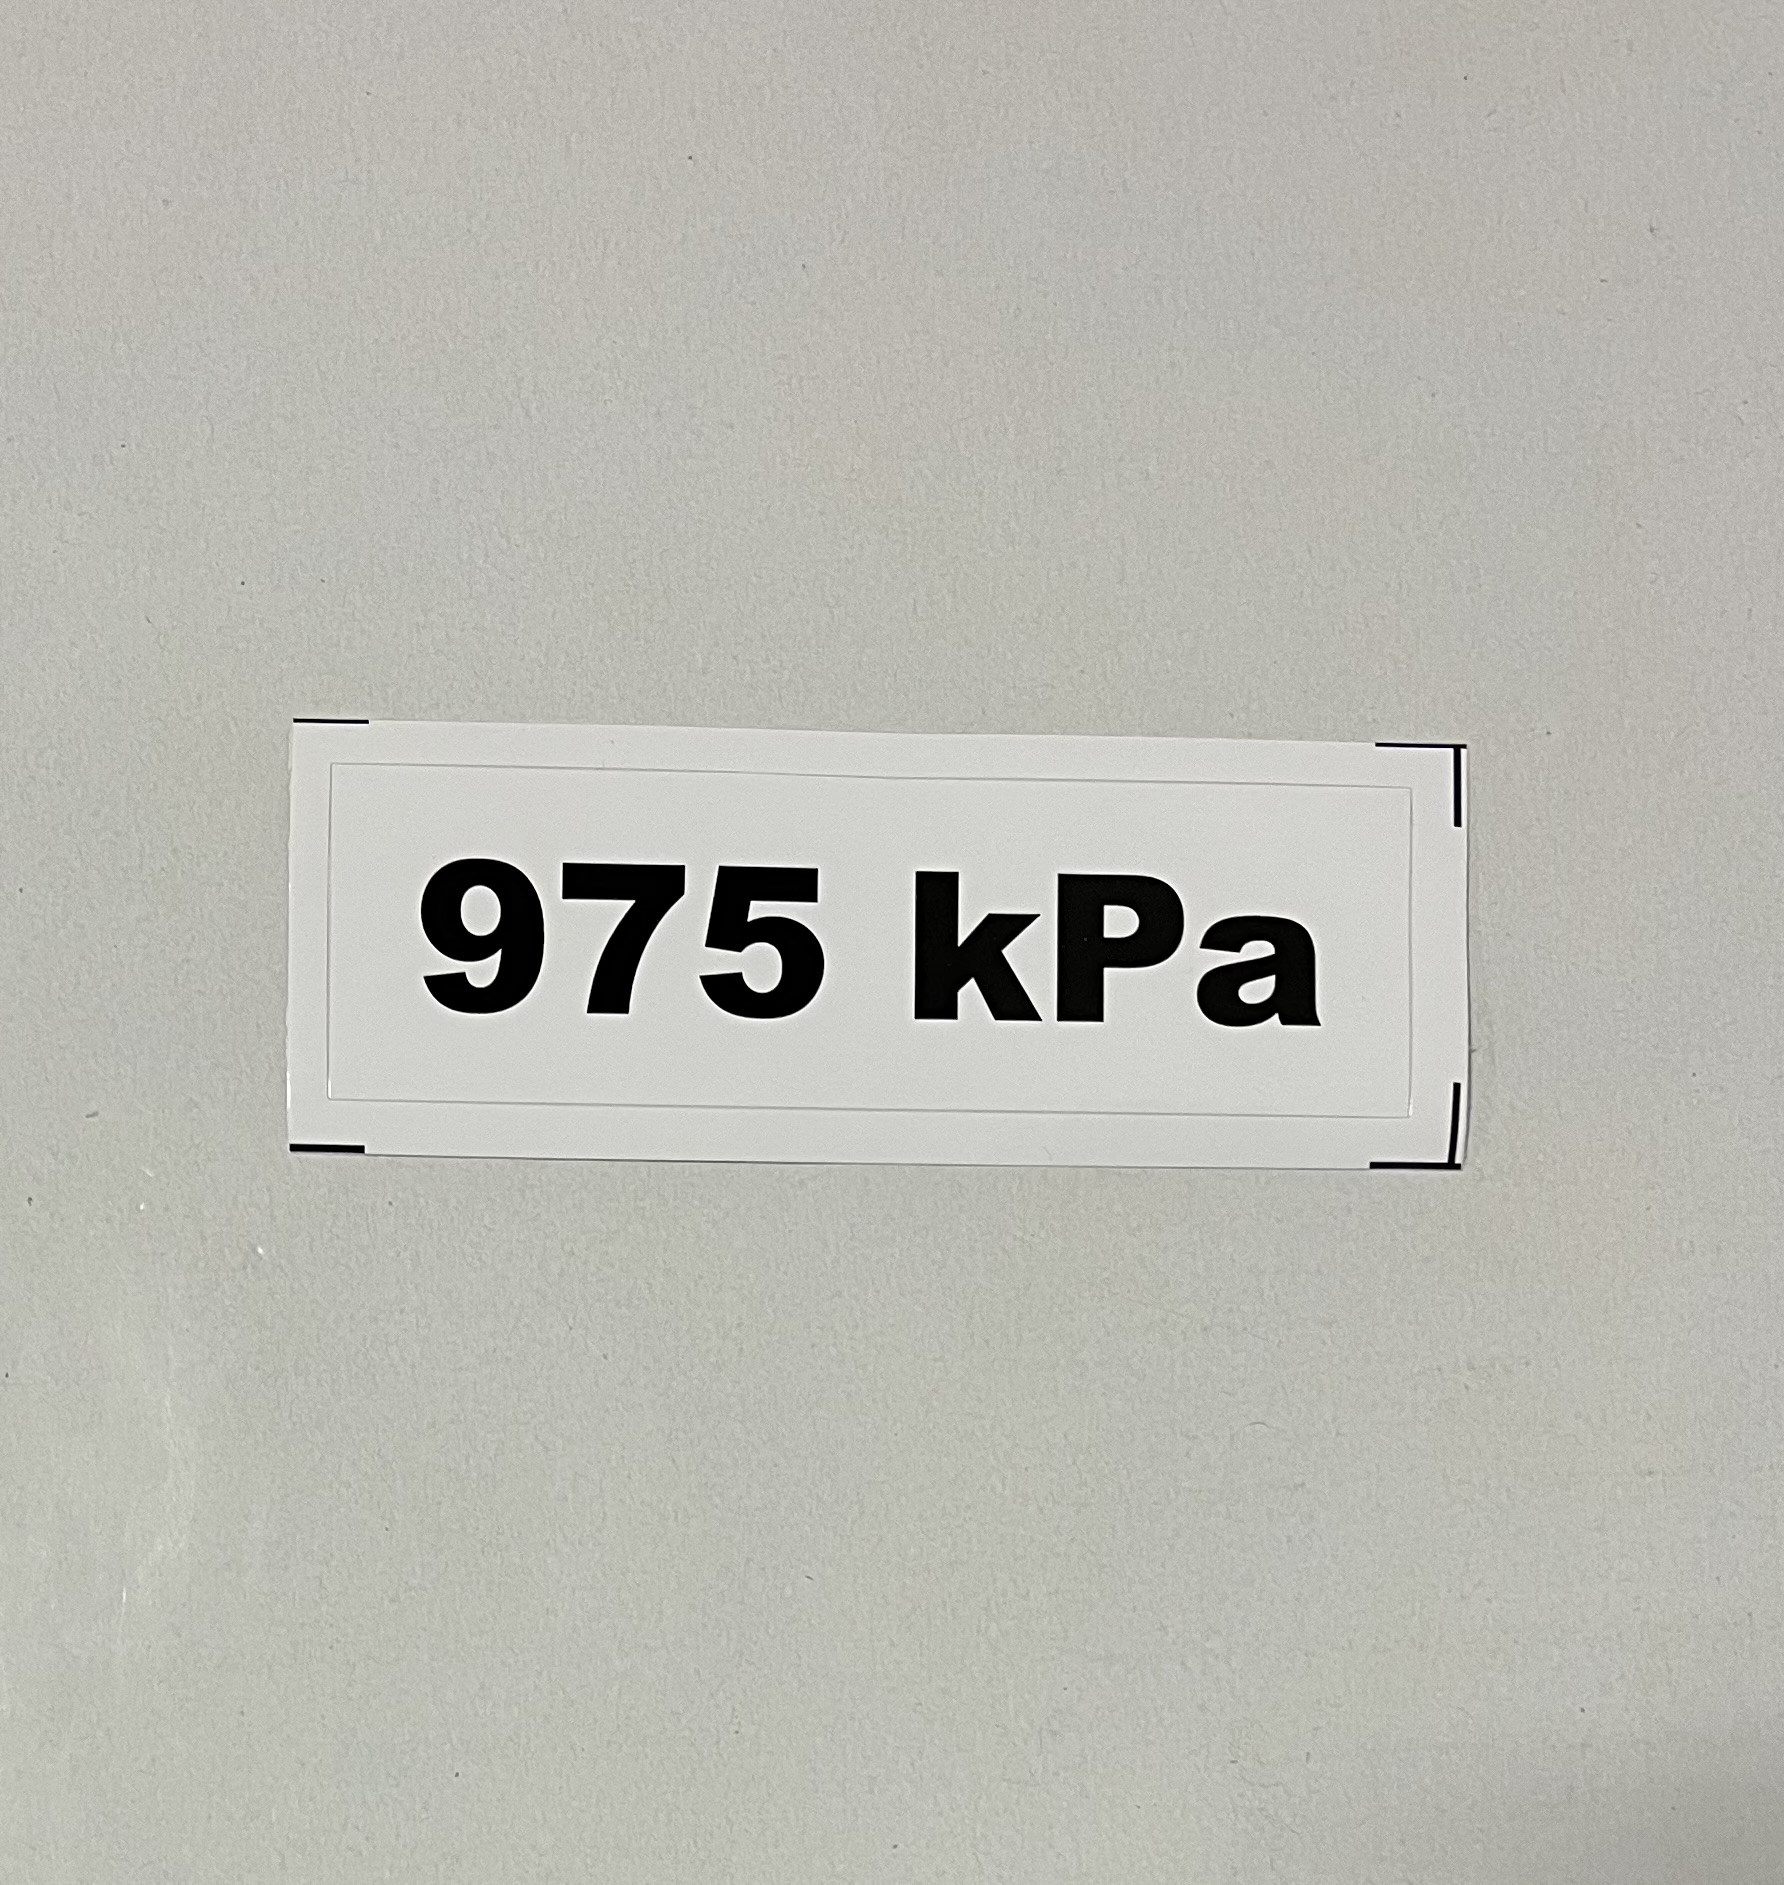 Označenie kPa 975